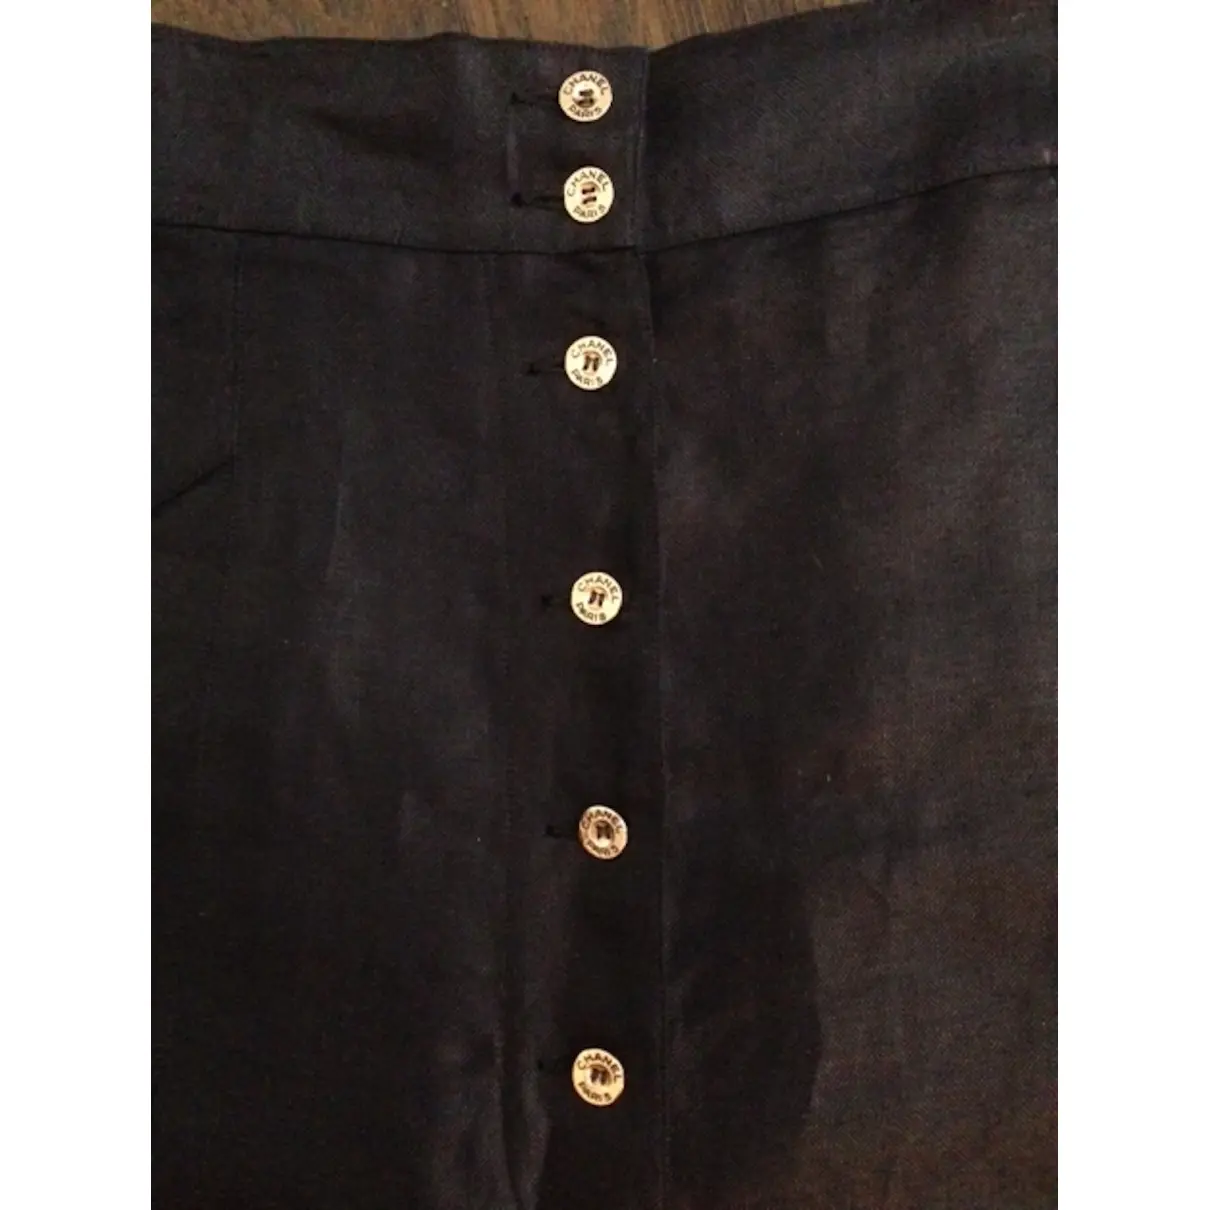 Linen mid-length skirt Chanel - Vintage